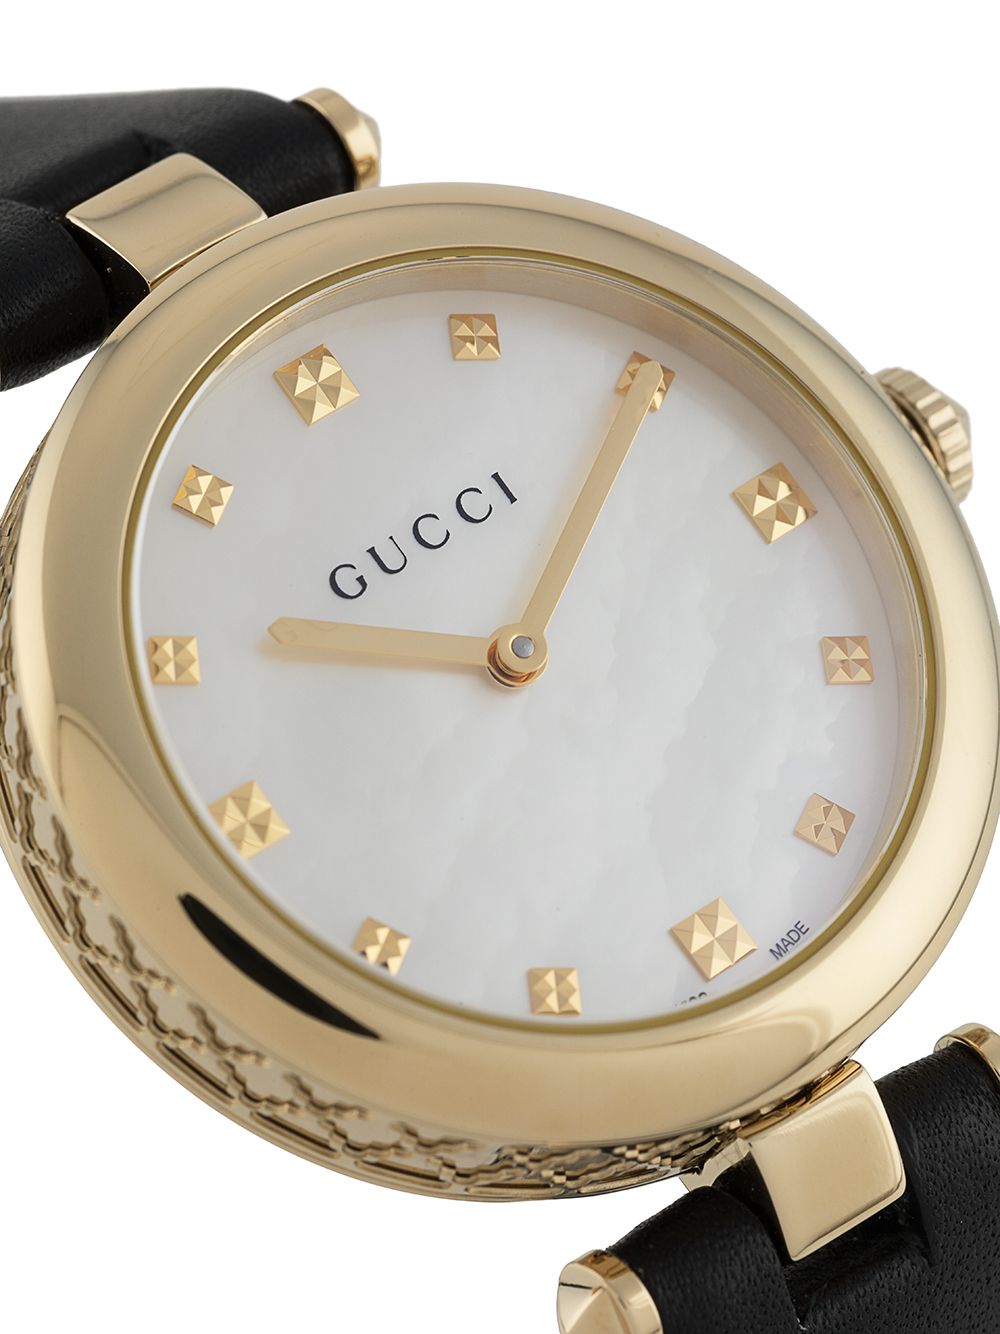 фото Gucci наручные часы diamantissima